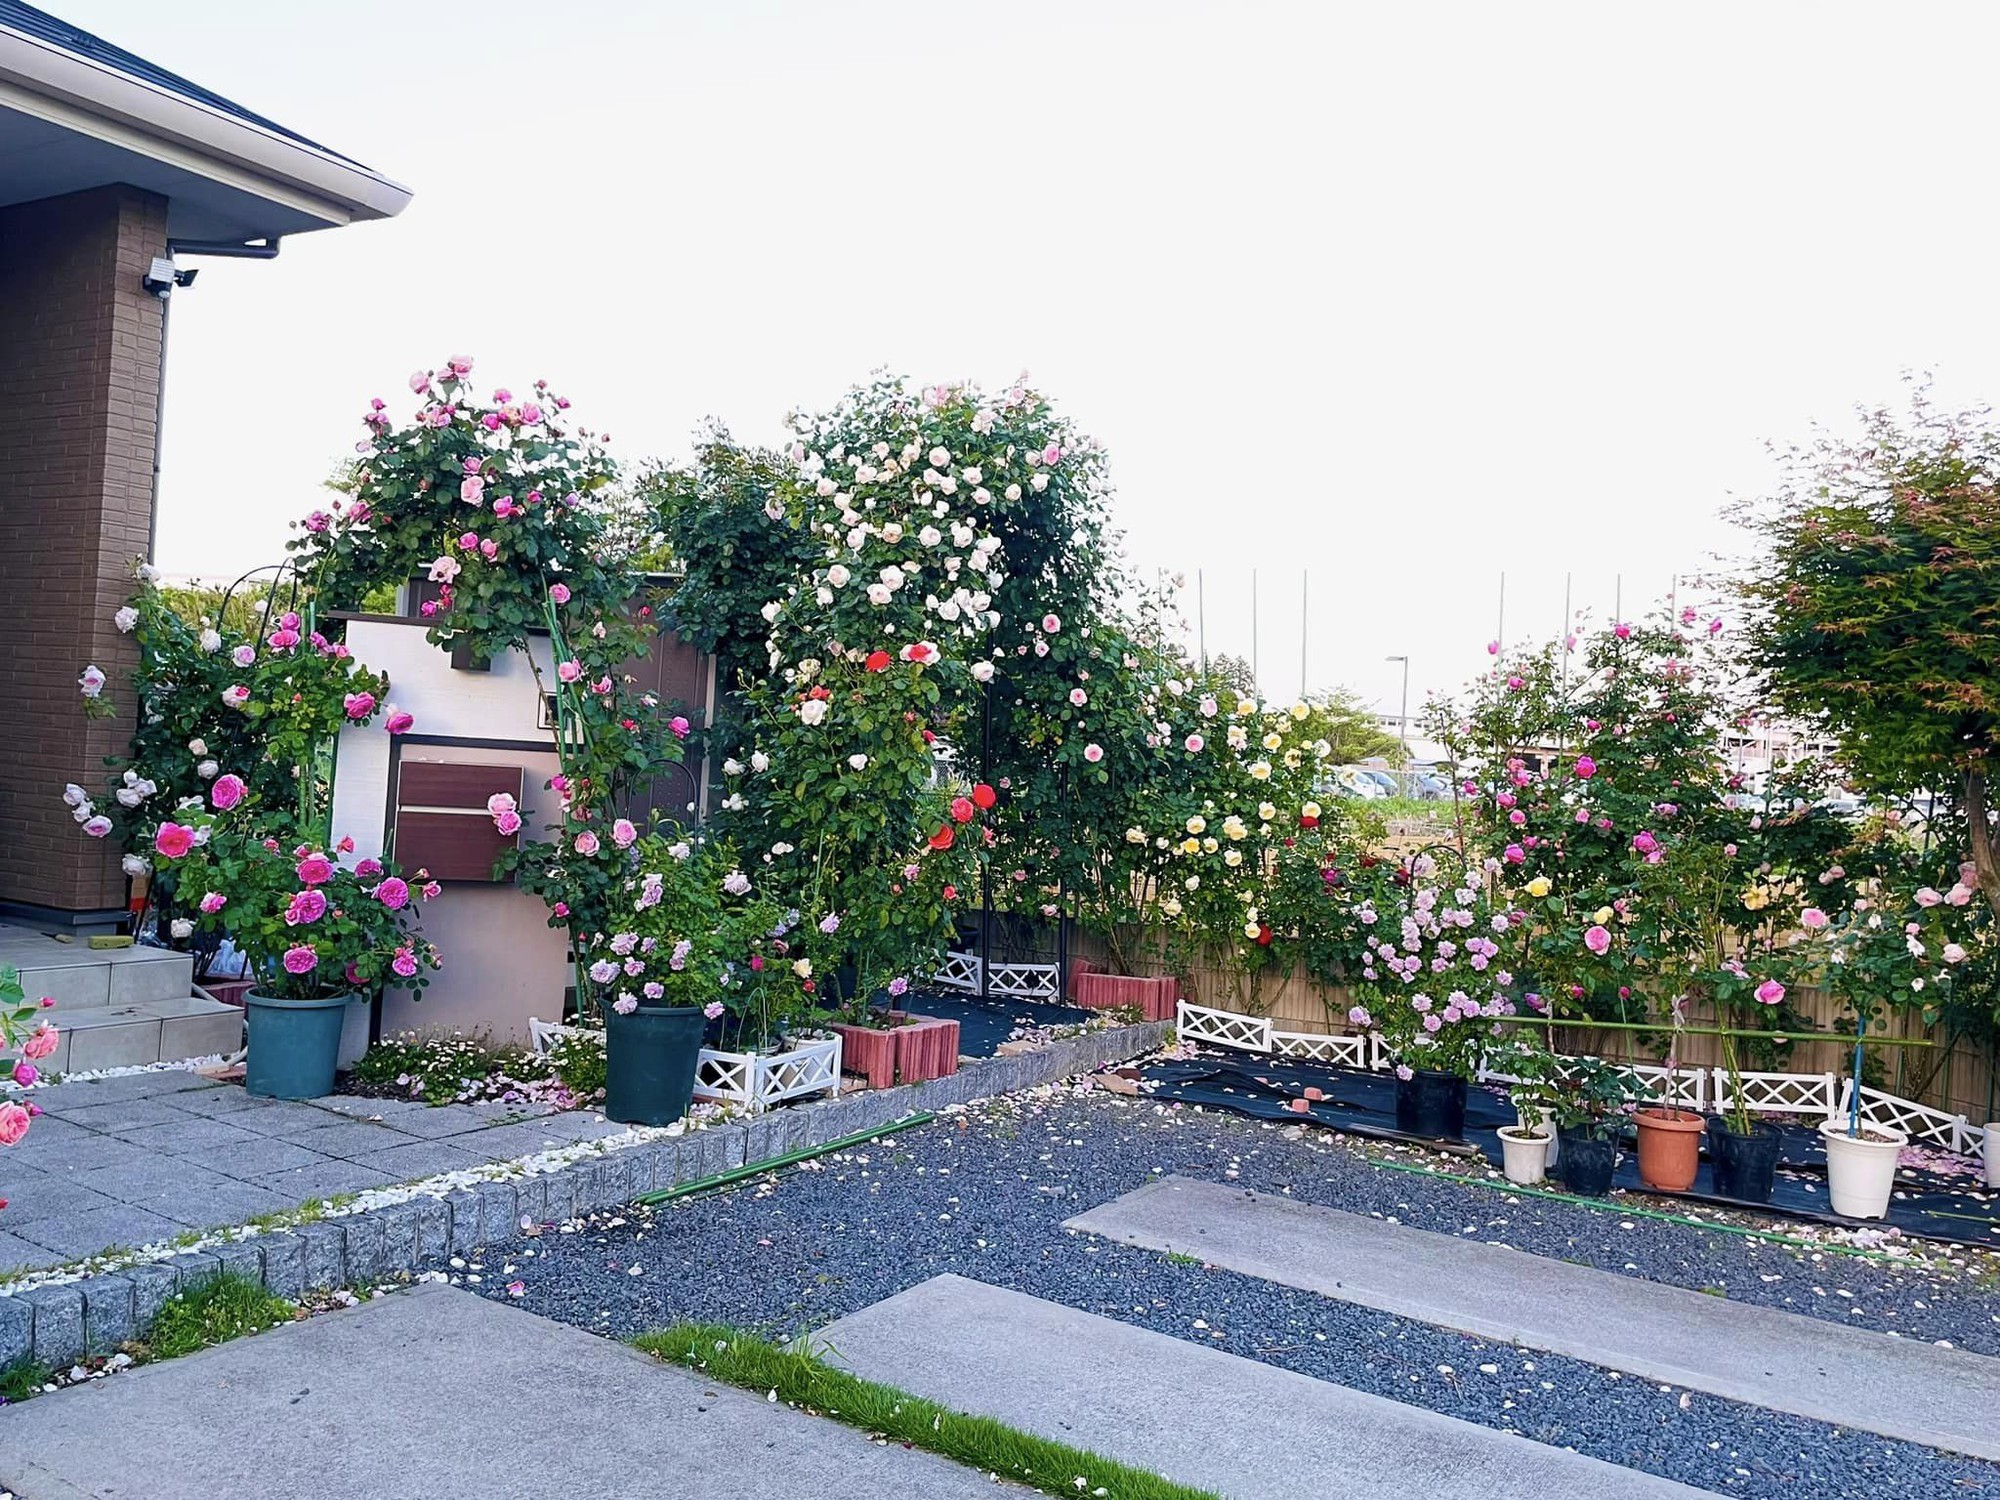 Ngôi nhà lúc nào cũng thơm nức mùi hoa vì có vườn hồng hơn 80 loại của mẹ Việt ở Nhật- Ảnh 1.